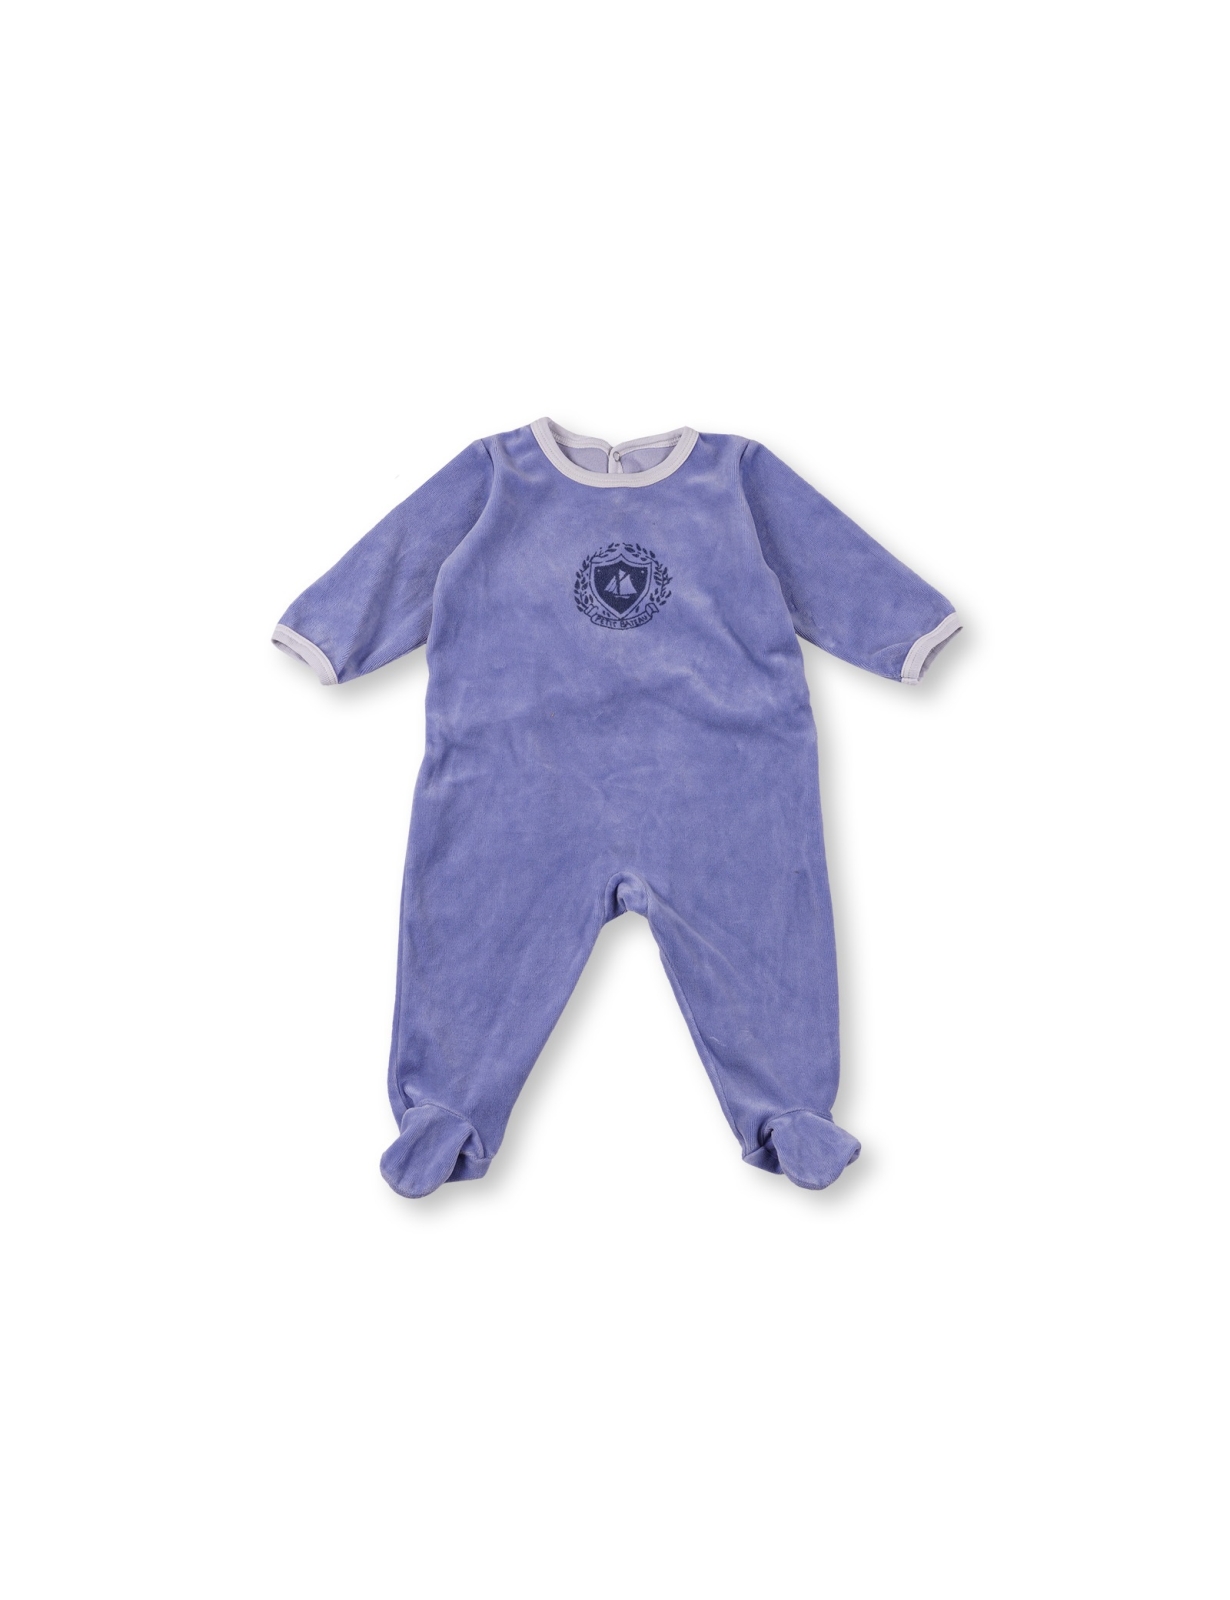 Pyjama bébé occasion - Vêtement enfant à petit prix - encore1Fois